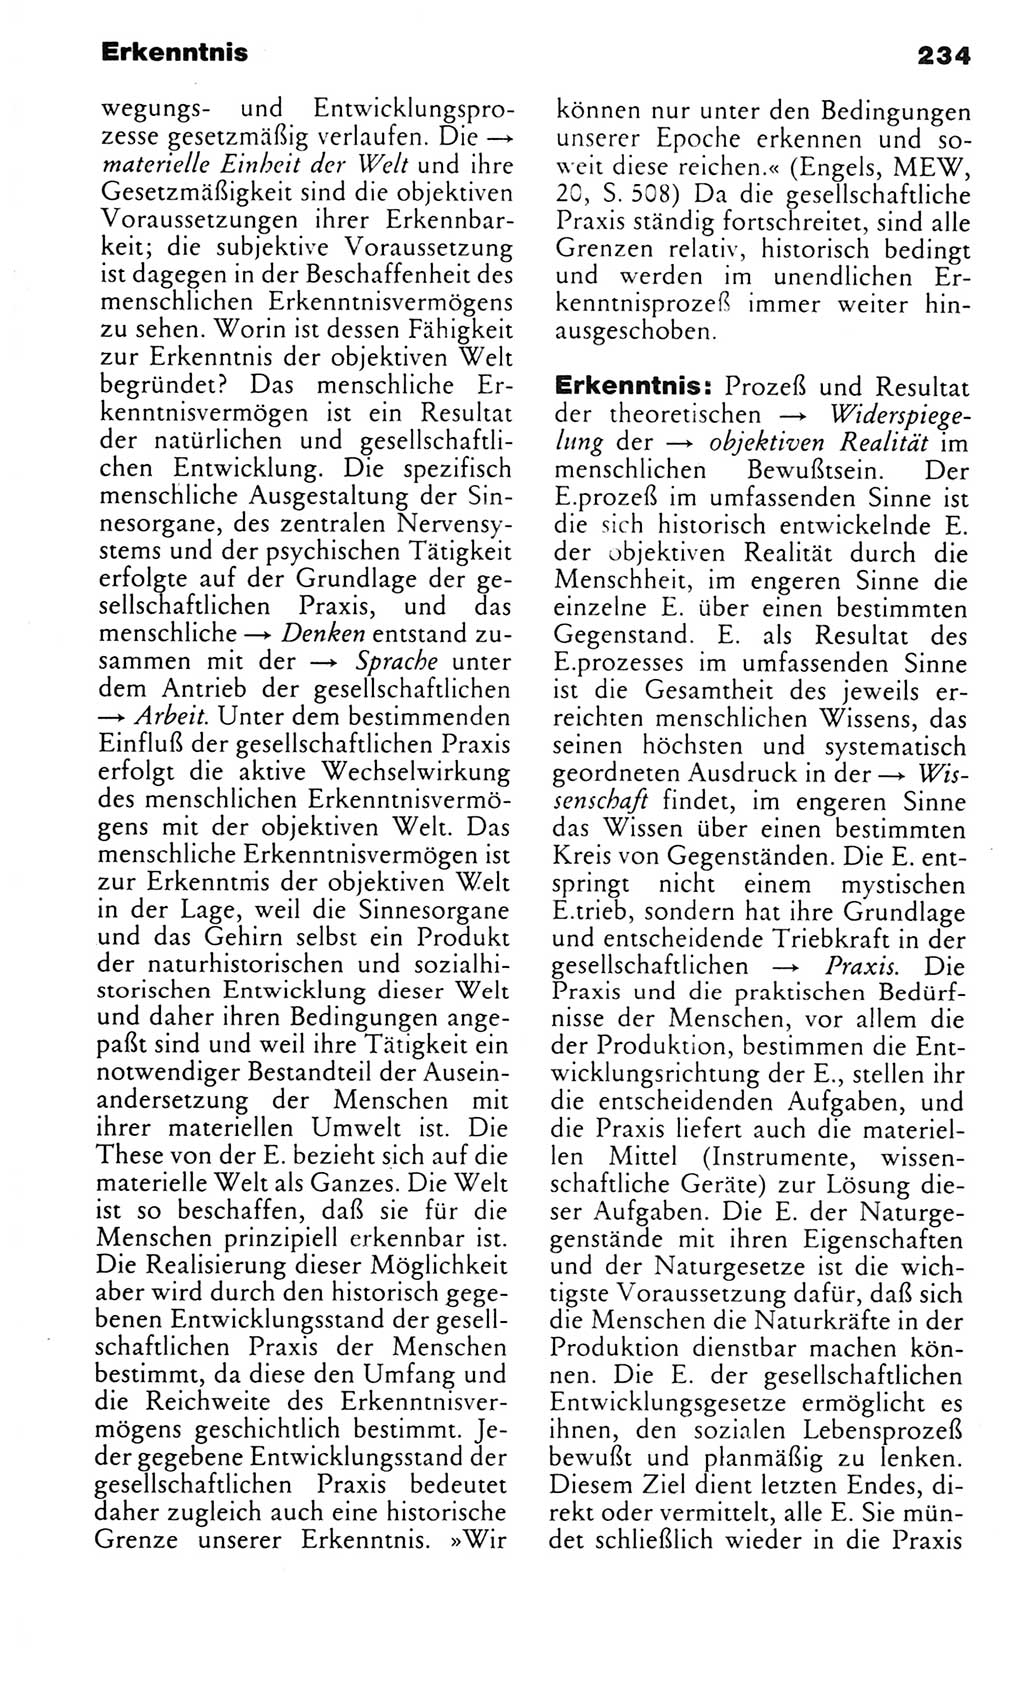 Kleines politisches Wörterbuch [Deutsche Demokratische Republik (DDR)] 1983, Seite 234 (Kl. pol. Wb. DDR 1983, S. 234)